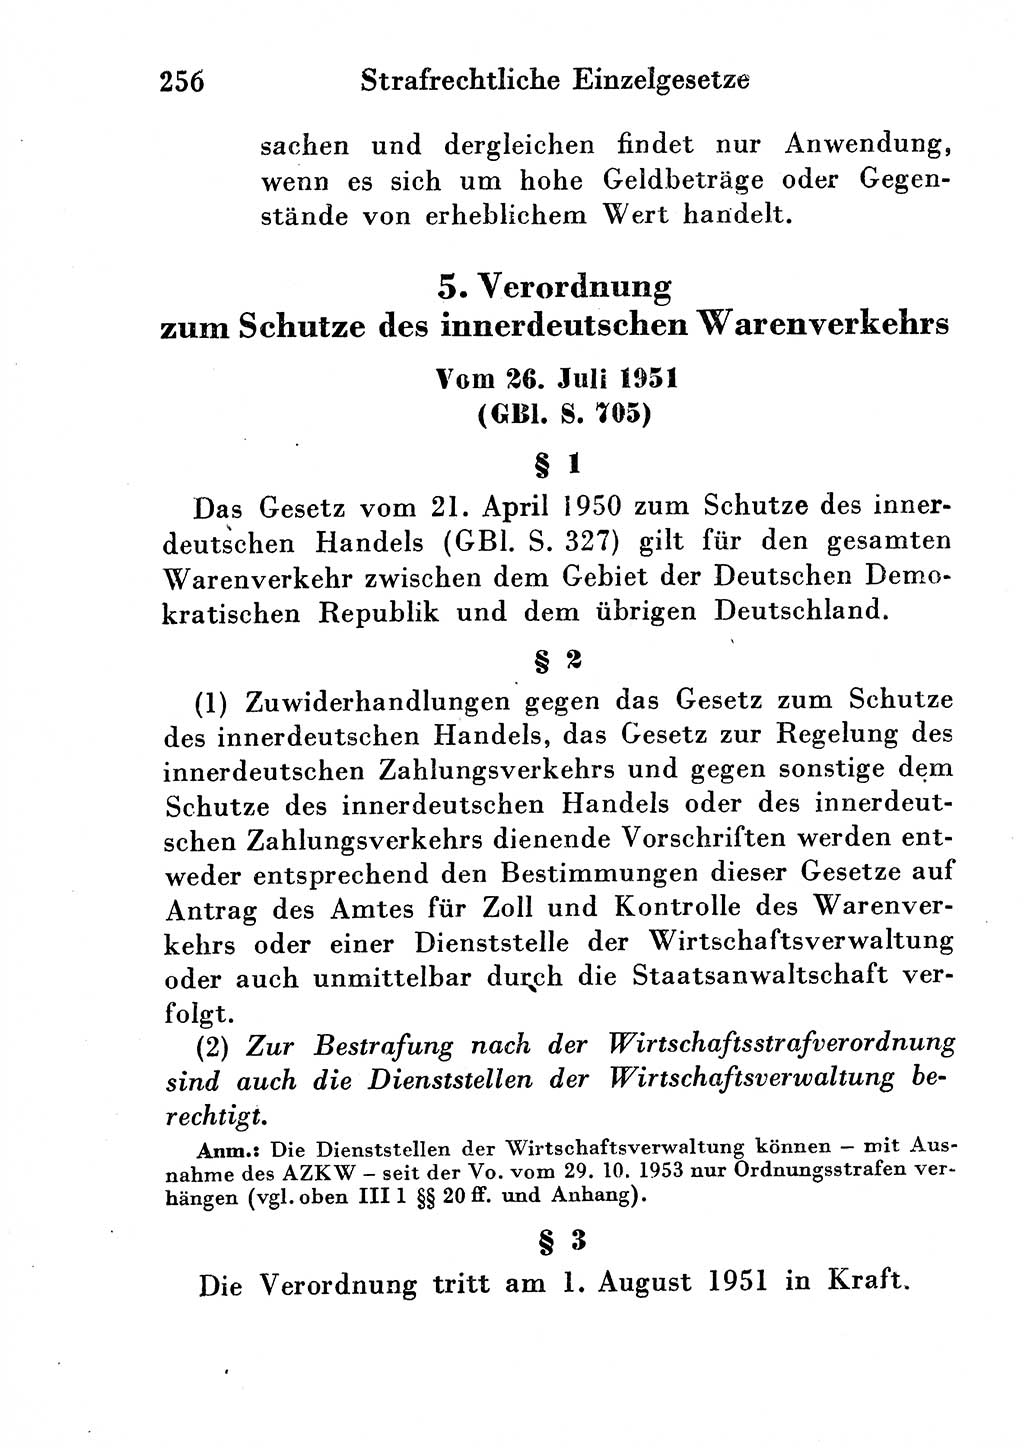 Strafgesetzbuch (StGB) und andere Strafgesetze [Deutsche Demokratische Republik (DDR)] 1954, Seite 256 (StGB Strafges. DDR 1954, S. 256)